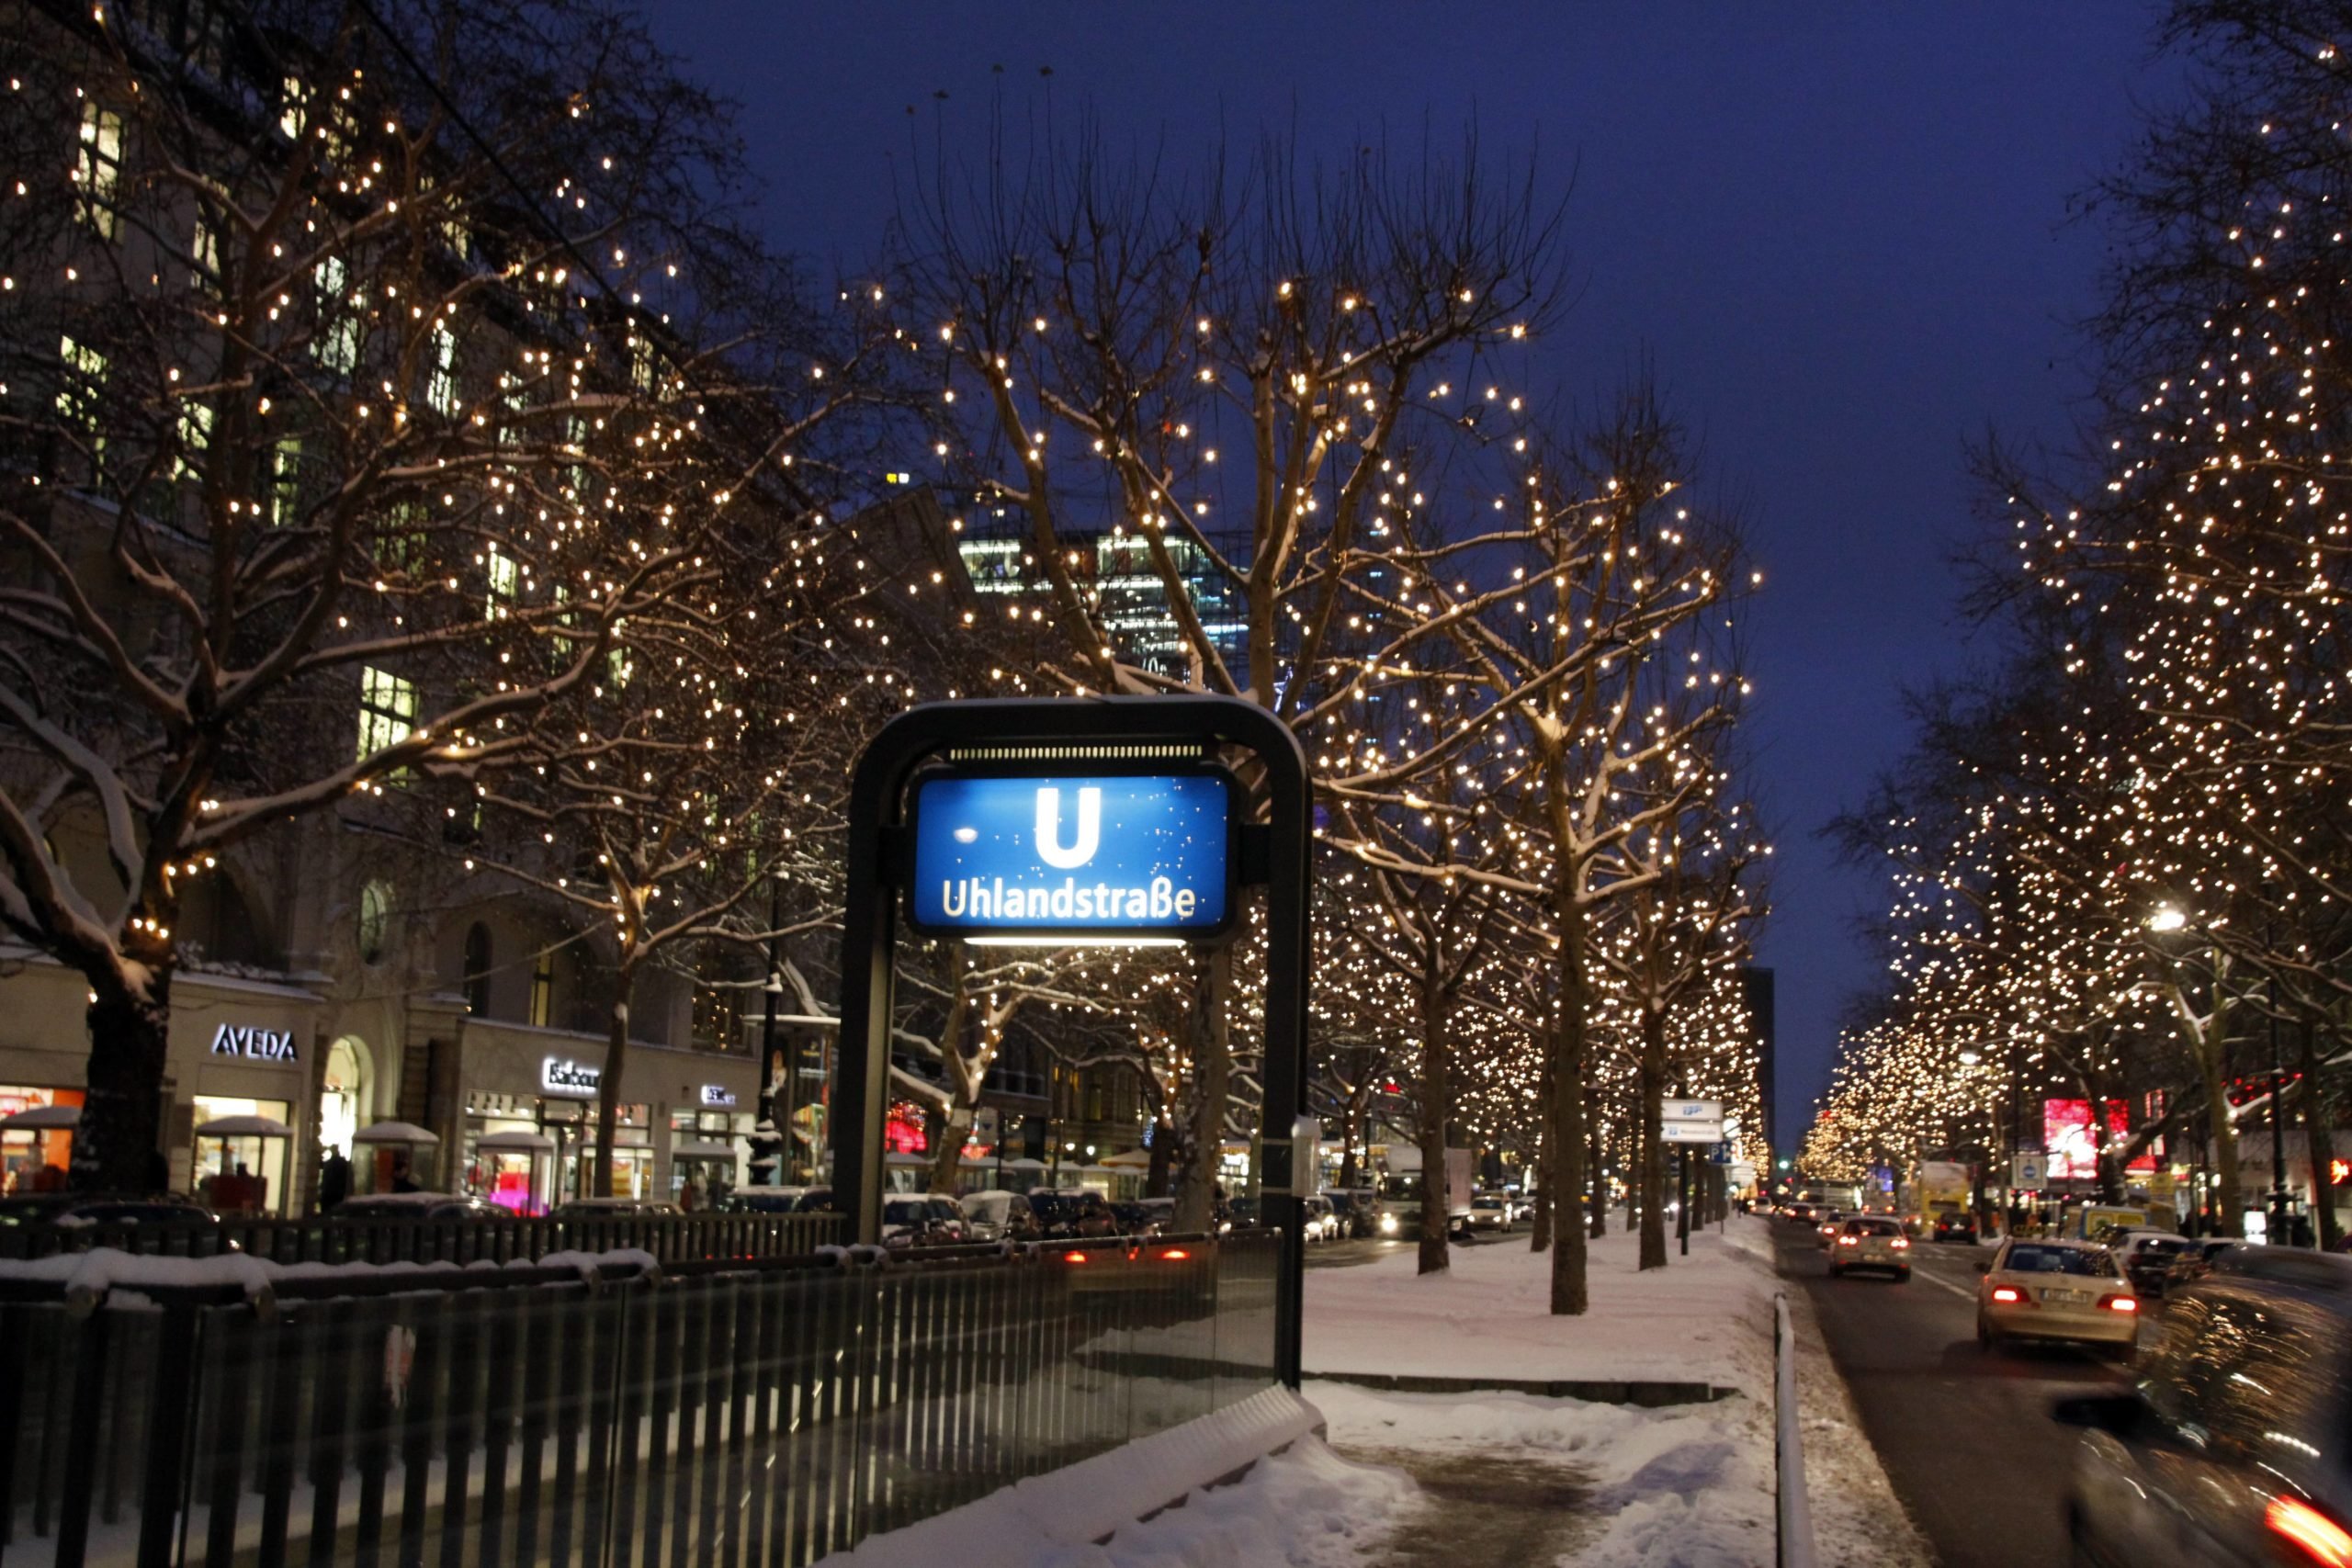 Schnee in Berlin Weiße Weihnachten 2010 in Berlin: Derartige Szenen werden leider immer seltener. Mit jedem Jahr werden die zeitlichen Abstände zwischen weißen Weihnachtsfesten größer.